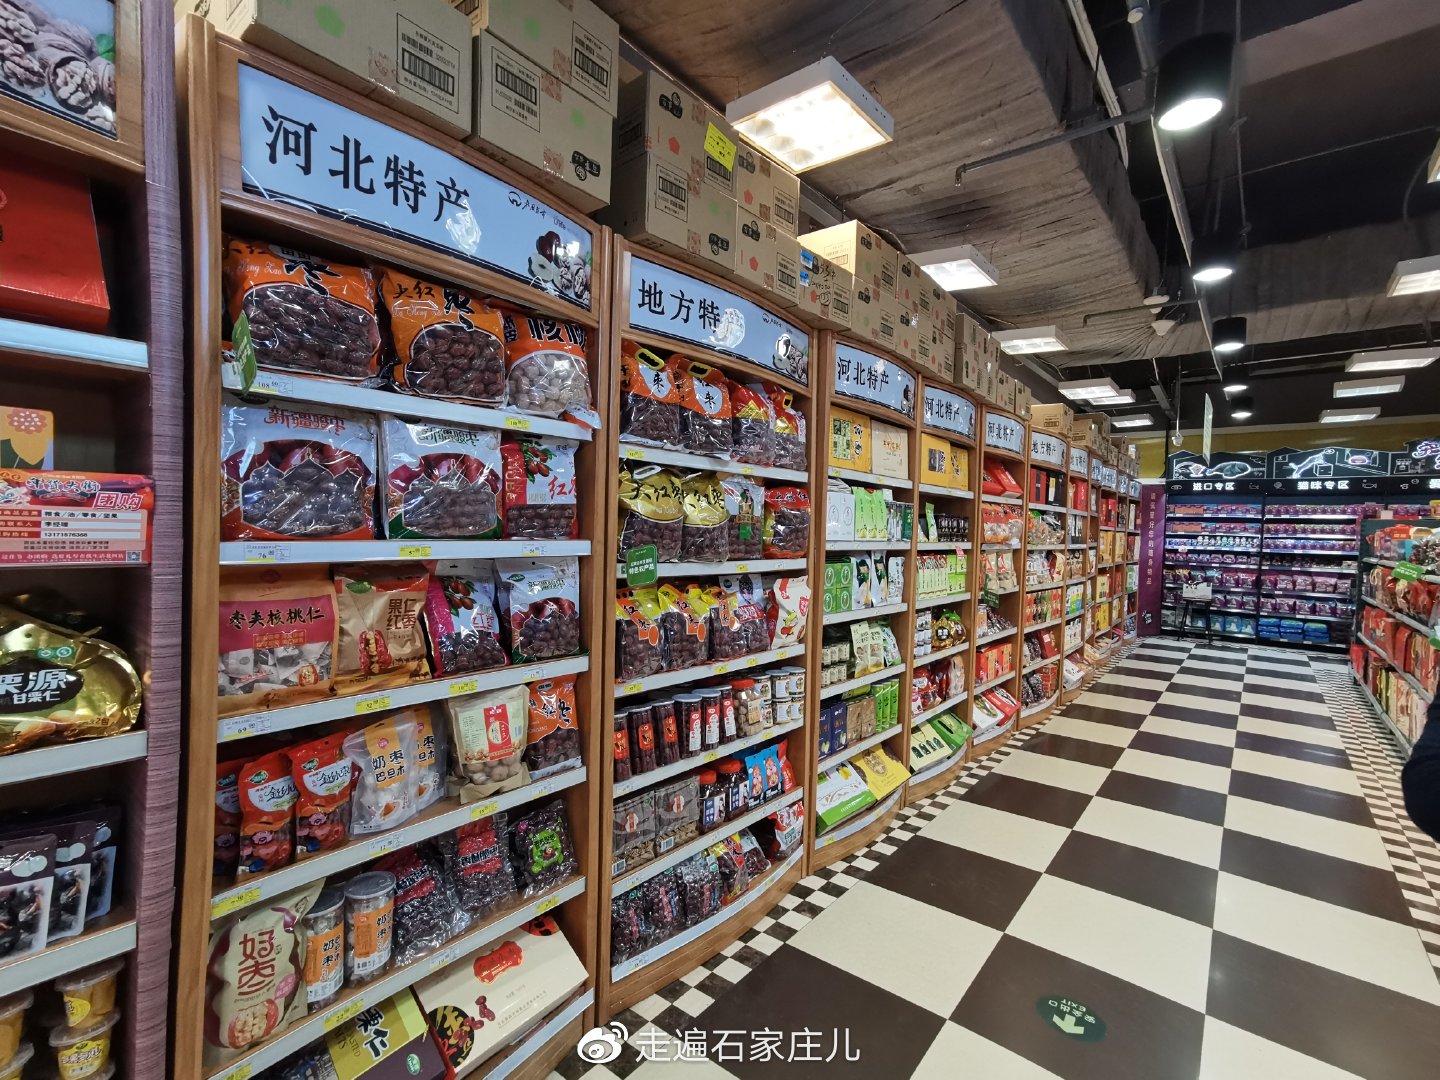 石家庄北国超市分布图图片